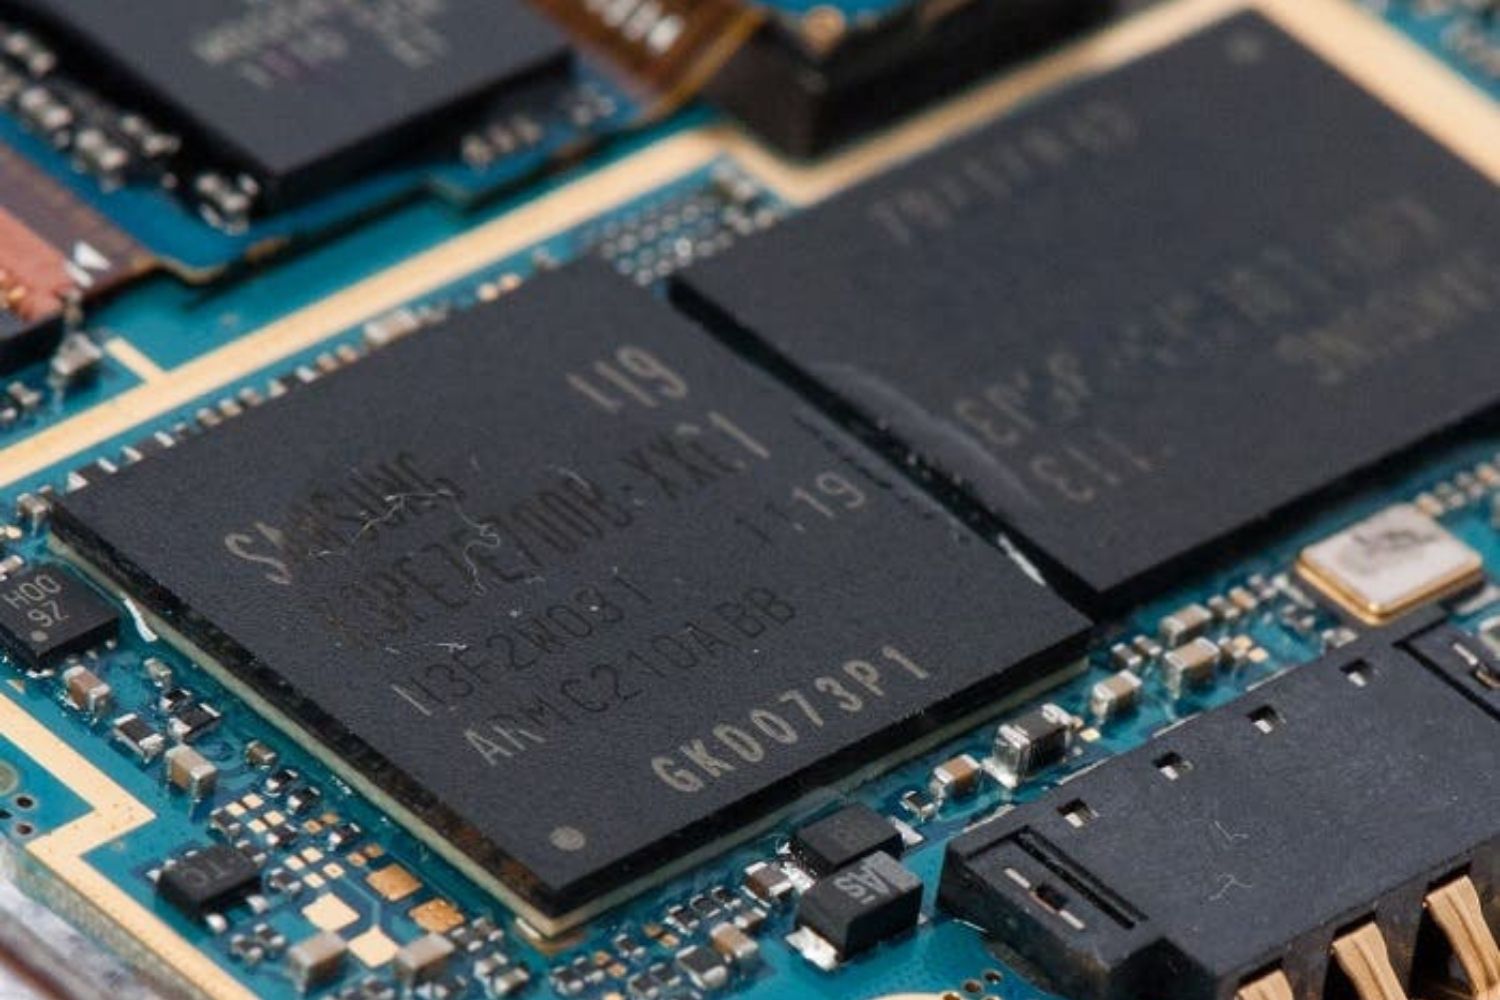 Ampliar memoria RAM en los teléfonos Samsung